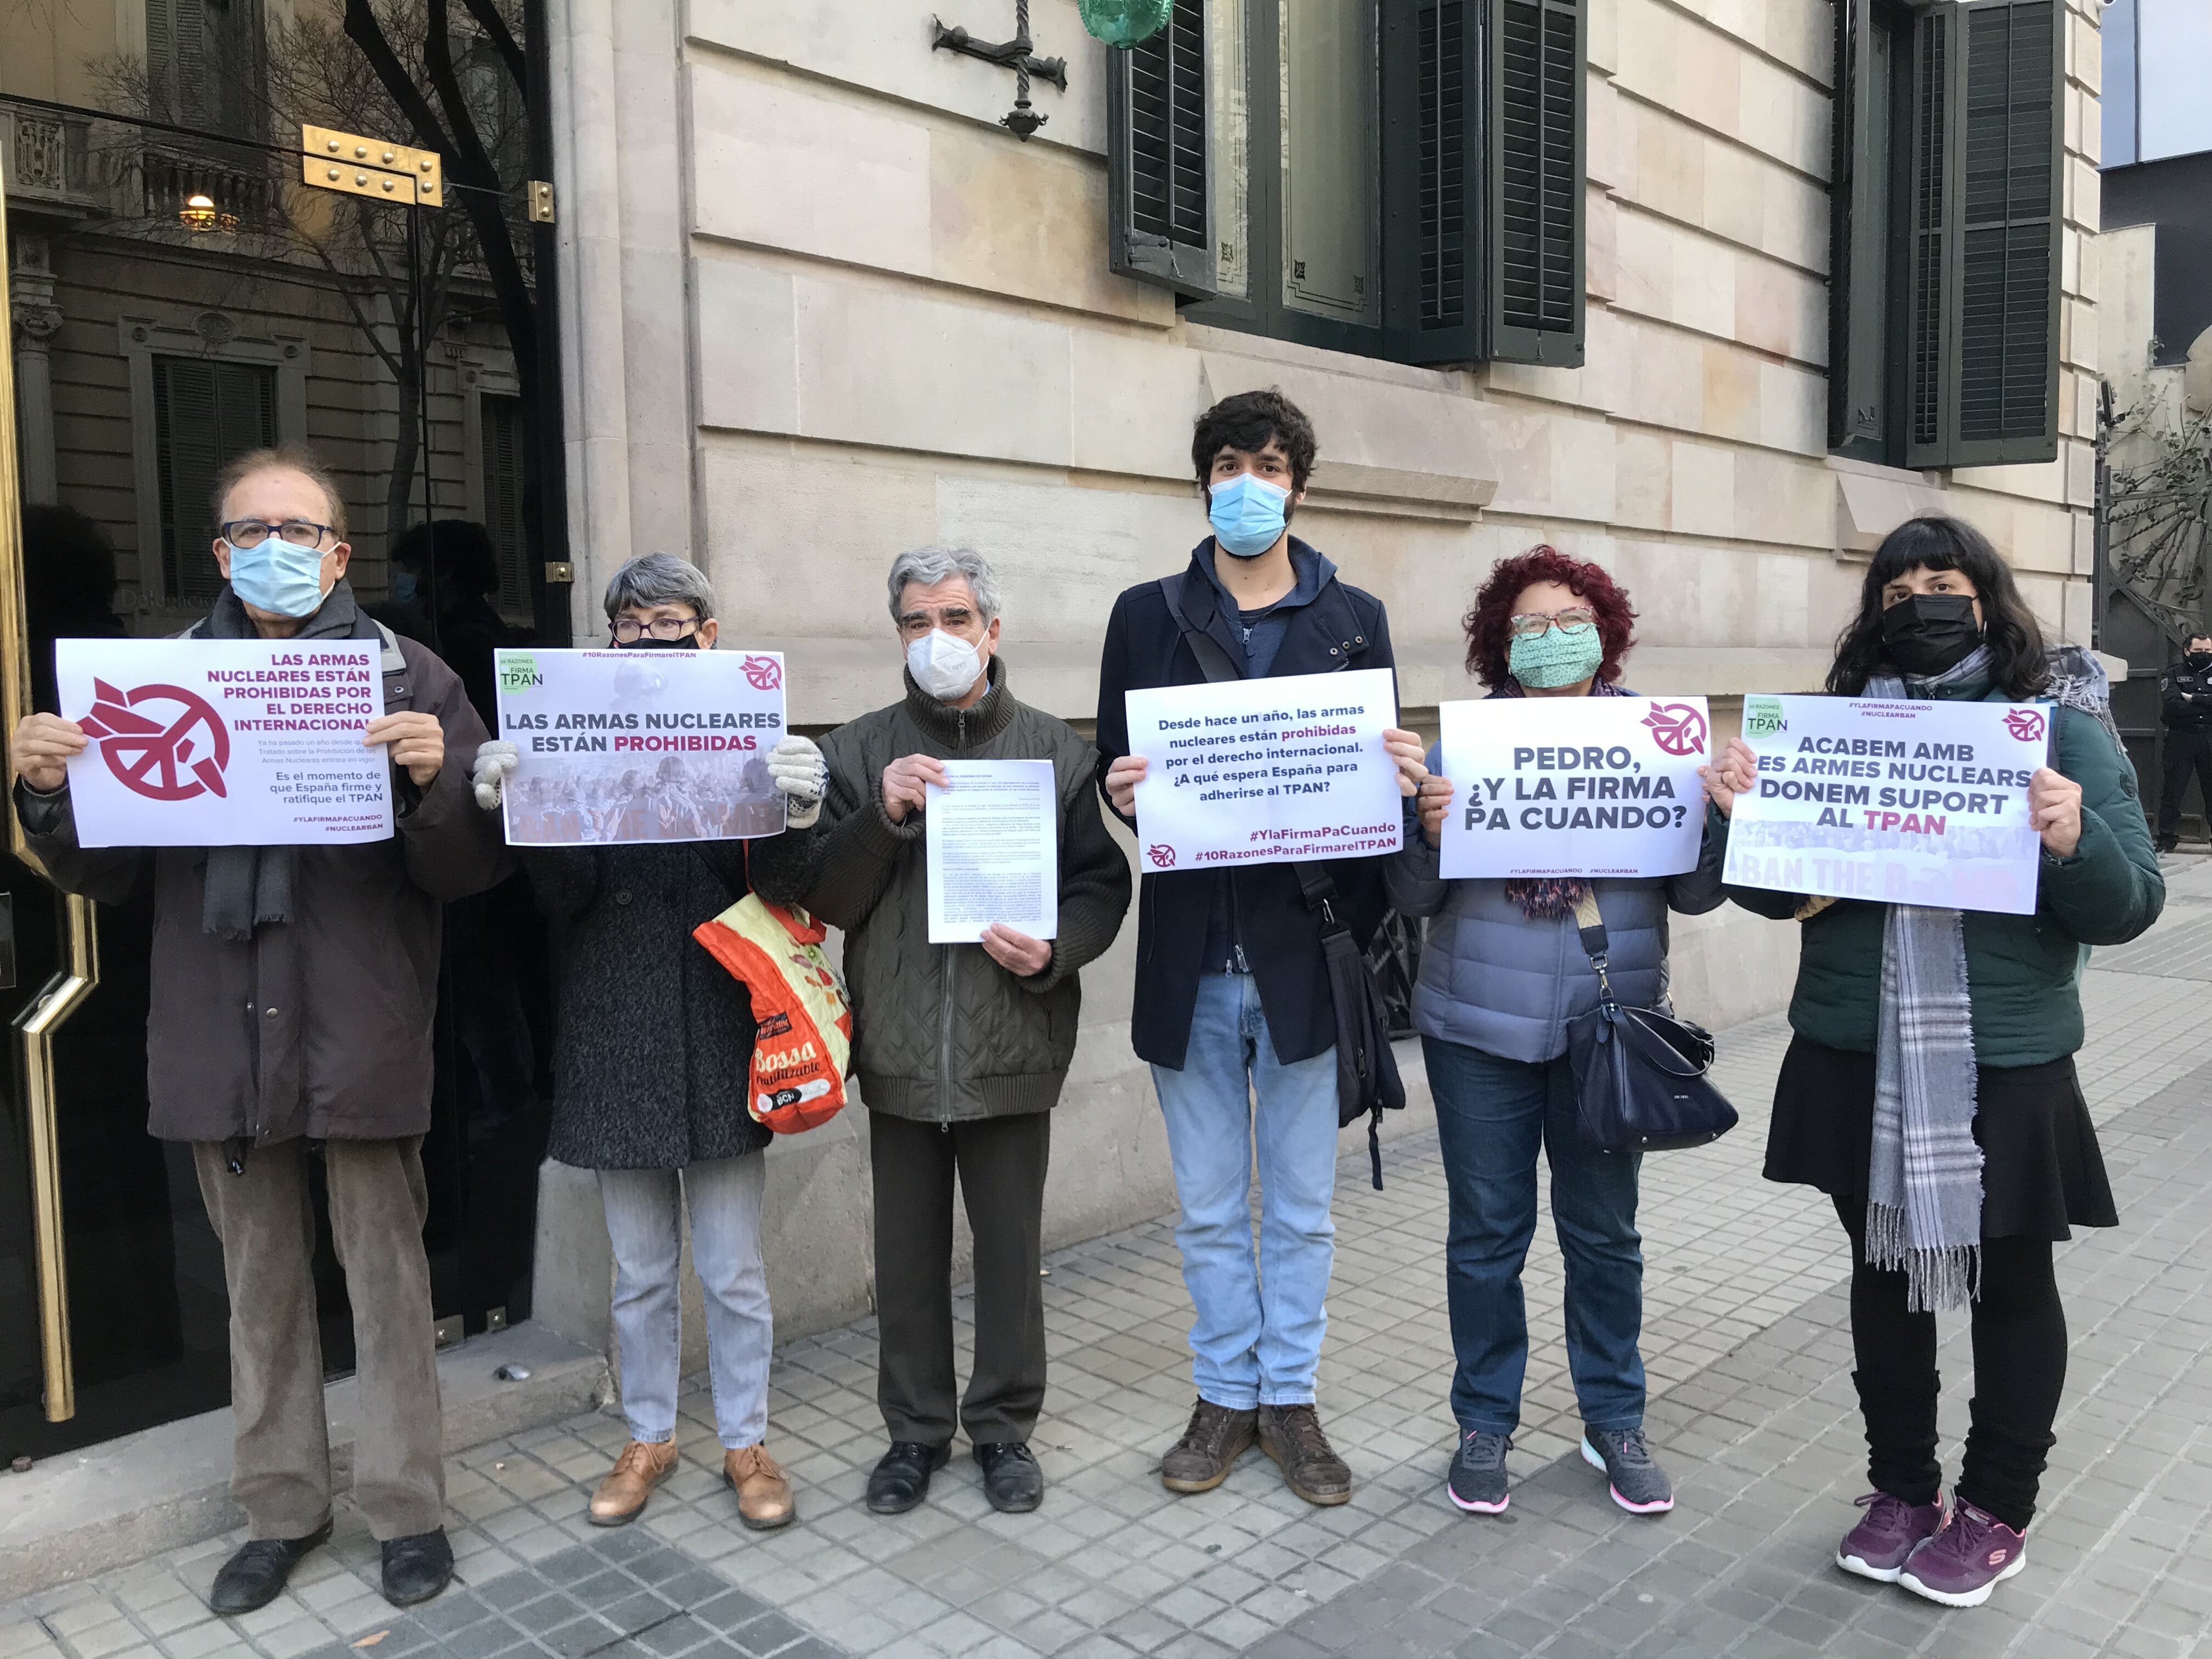 El Centre Delàs y decenas de organizaciones de paz y derechos humanos de todo el Estado español pedimos al Gobierno que firme el Tratado de Prohibición de las Armas Nucleares, un año después de su entrada en vigor